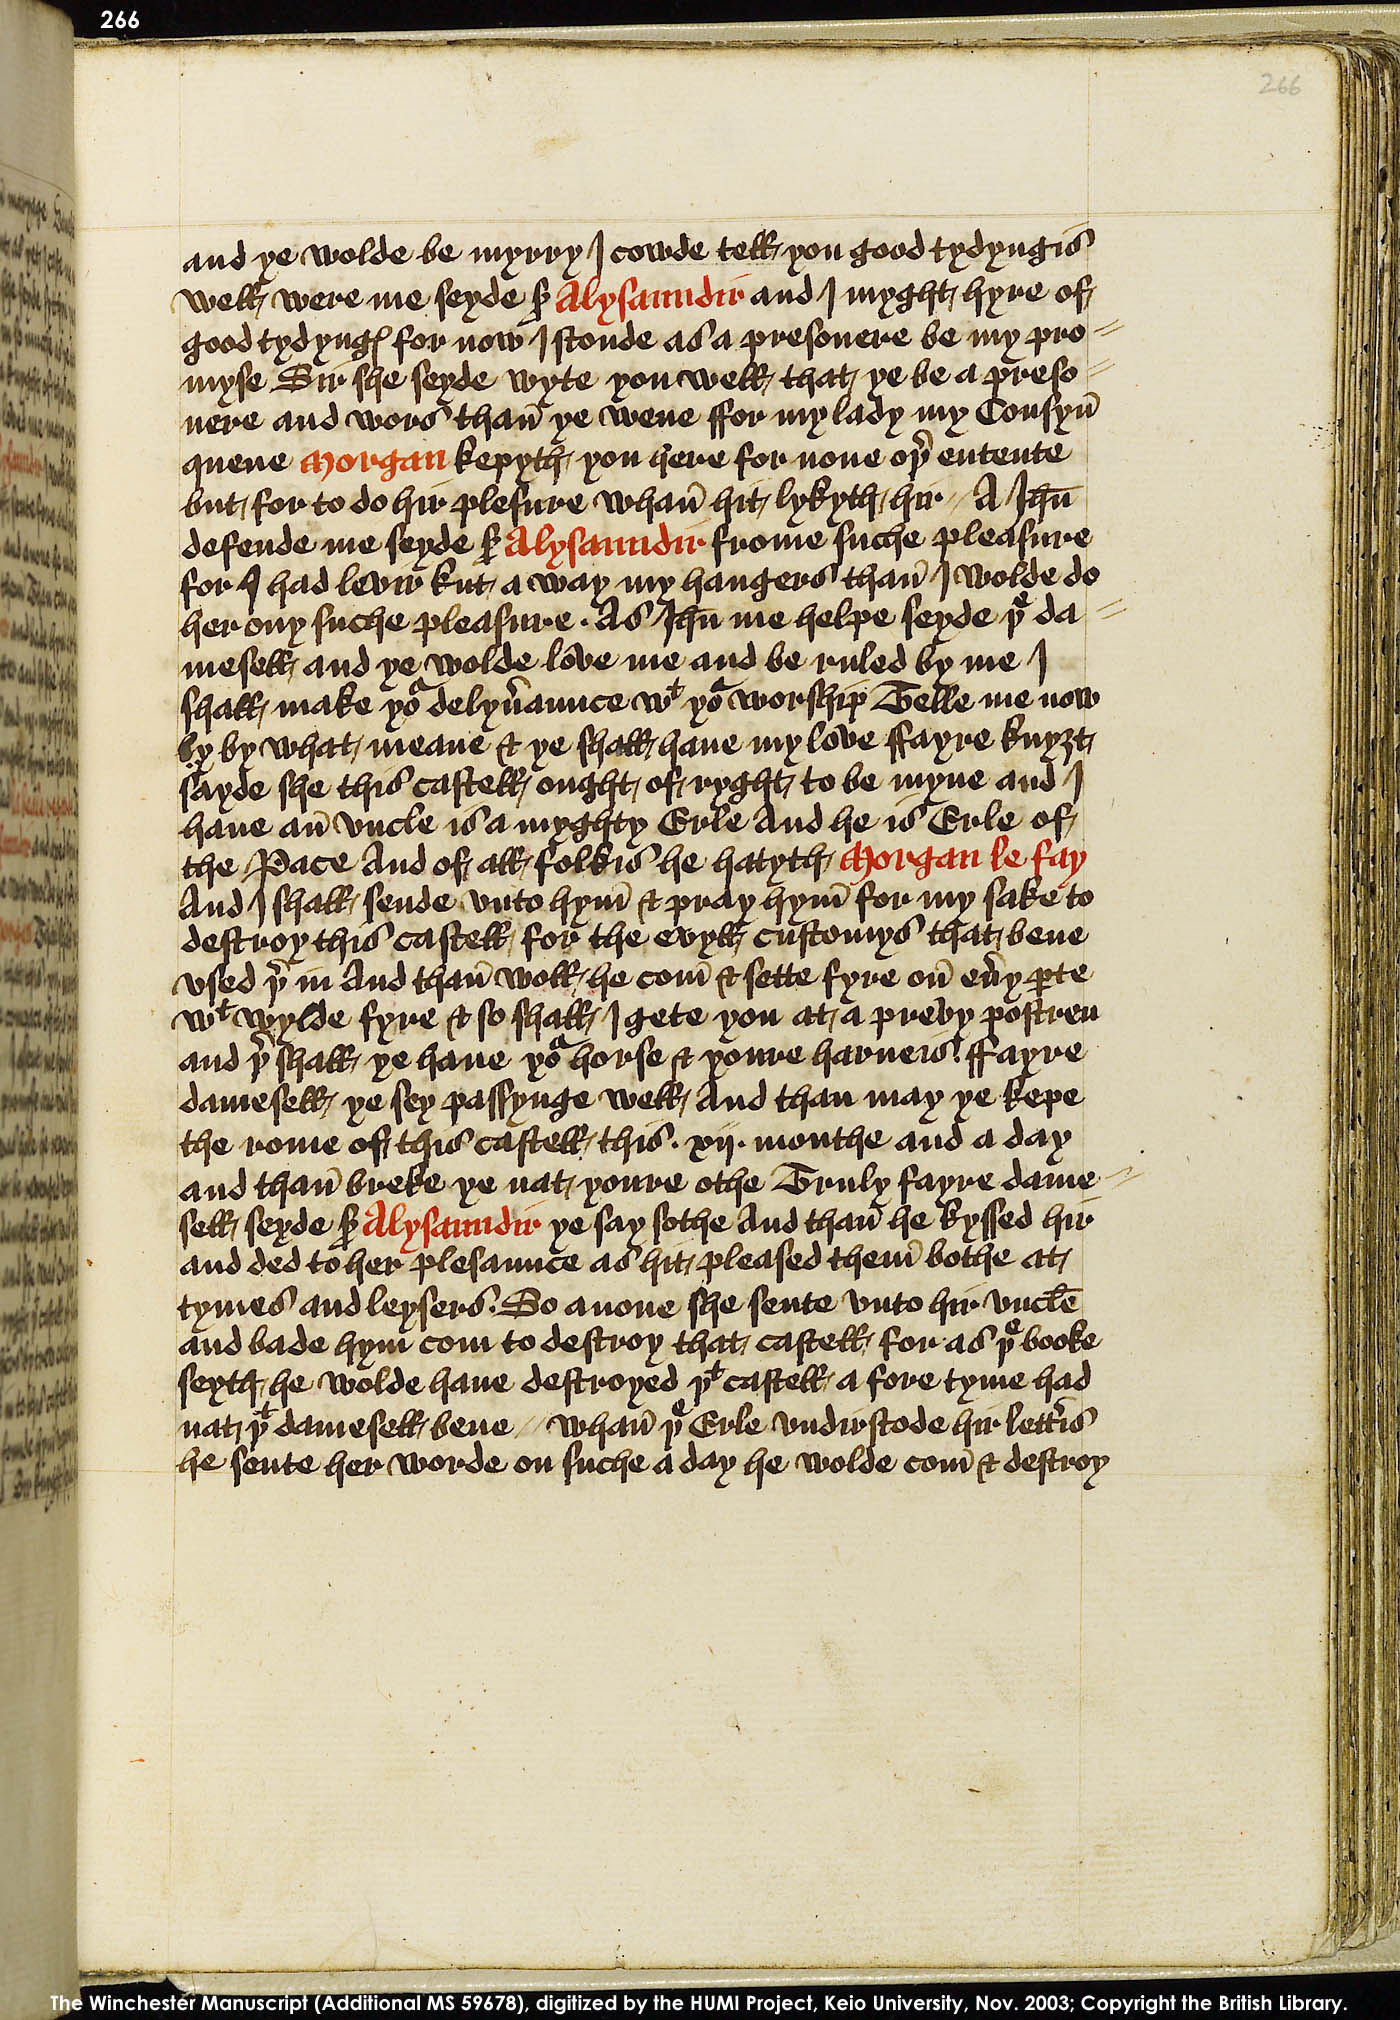 Folio 266r